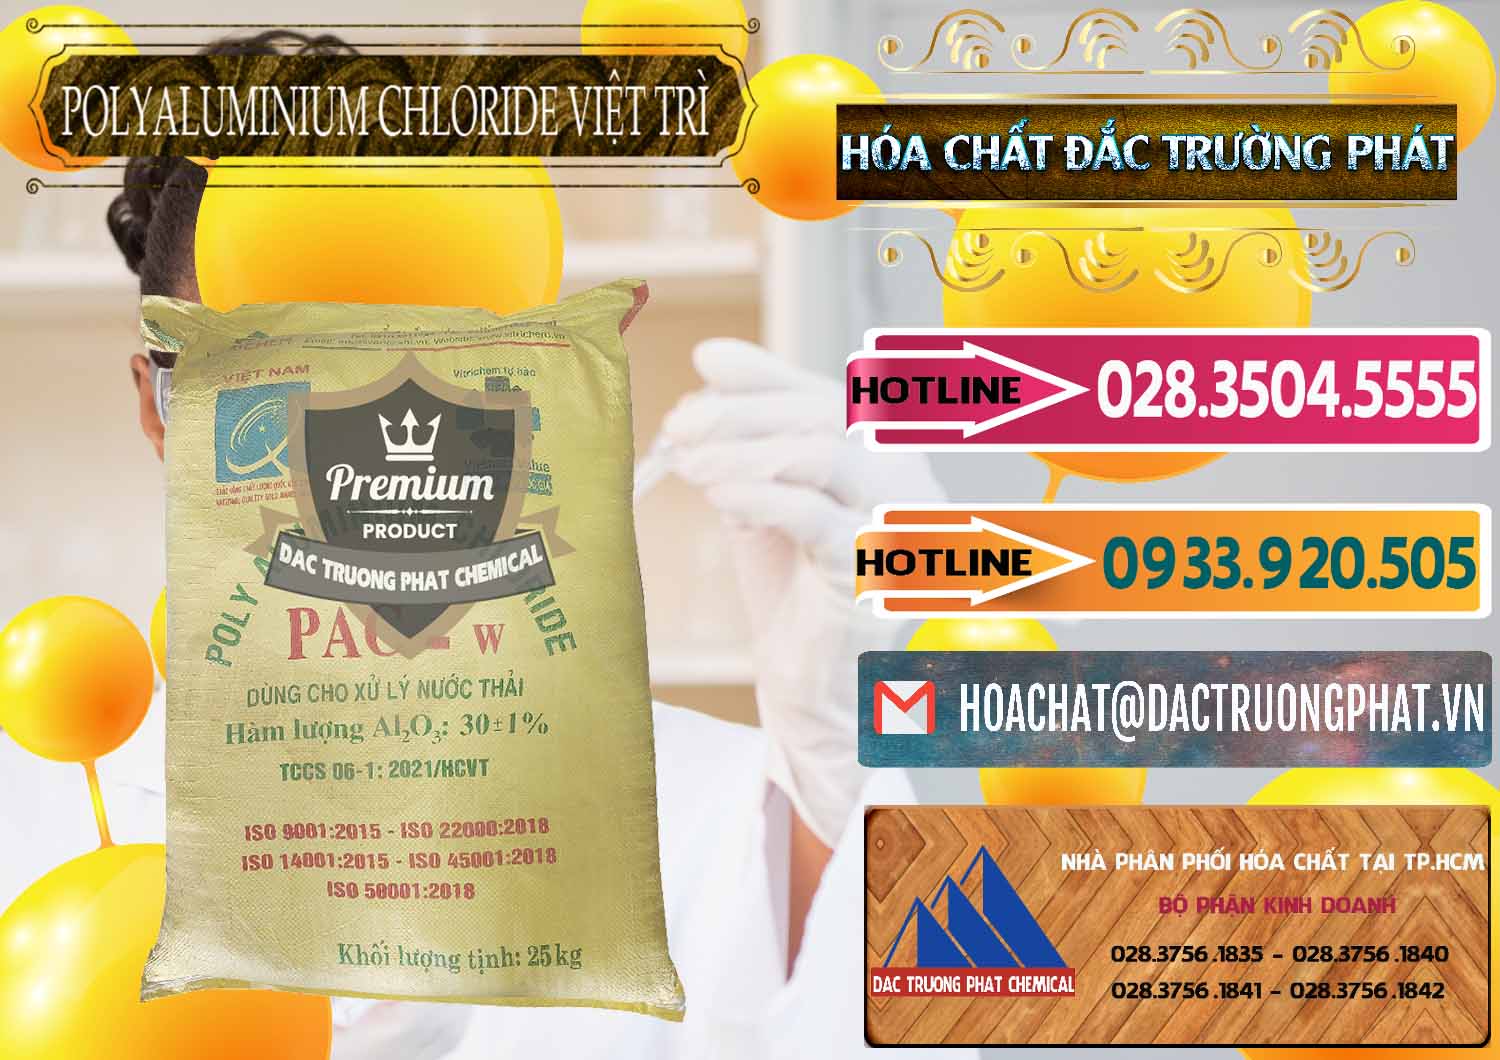 Chuyên cung ứng và bán PAC - Polyaluminium Chloride Việt Trì Việt Nam - 0487 - Công ty chuyên cung cấp _ kinh doanh hóa chất tại TP.HCM - dactruongphat.vn